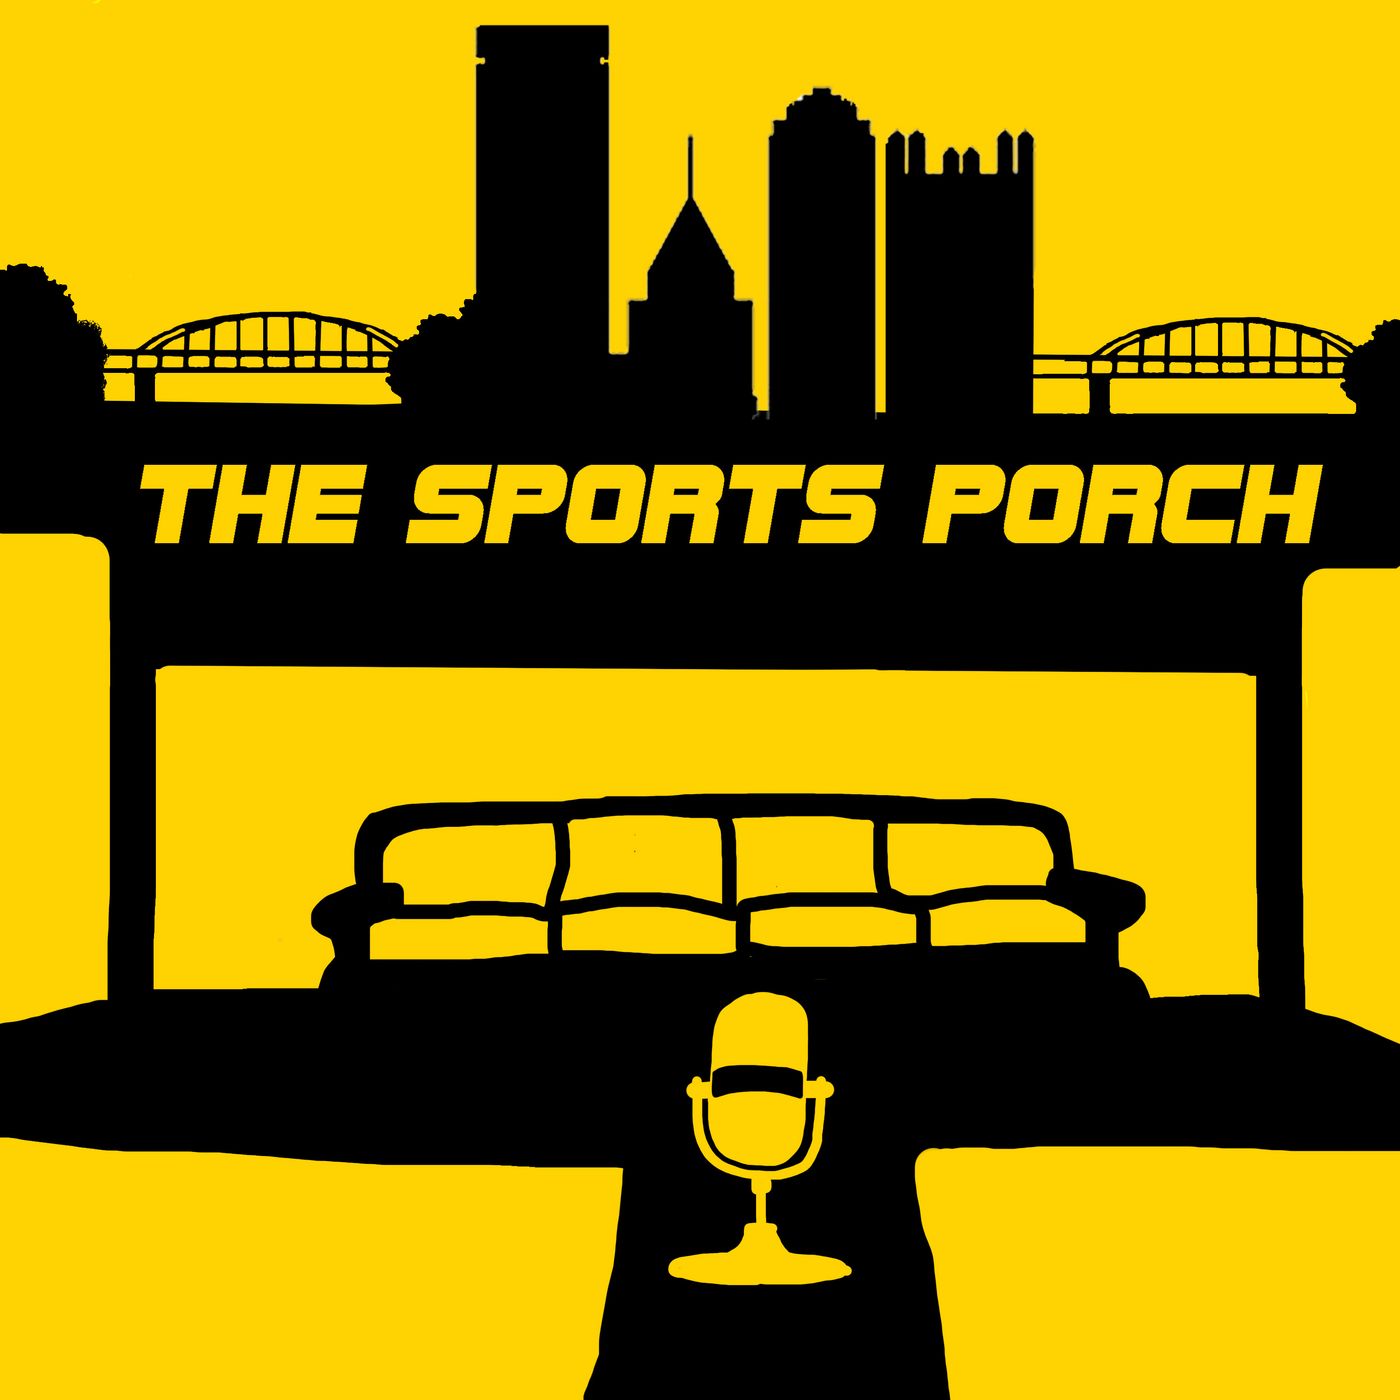 The Sports Porch - Happy Labor Day!